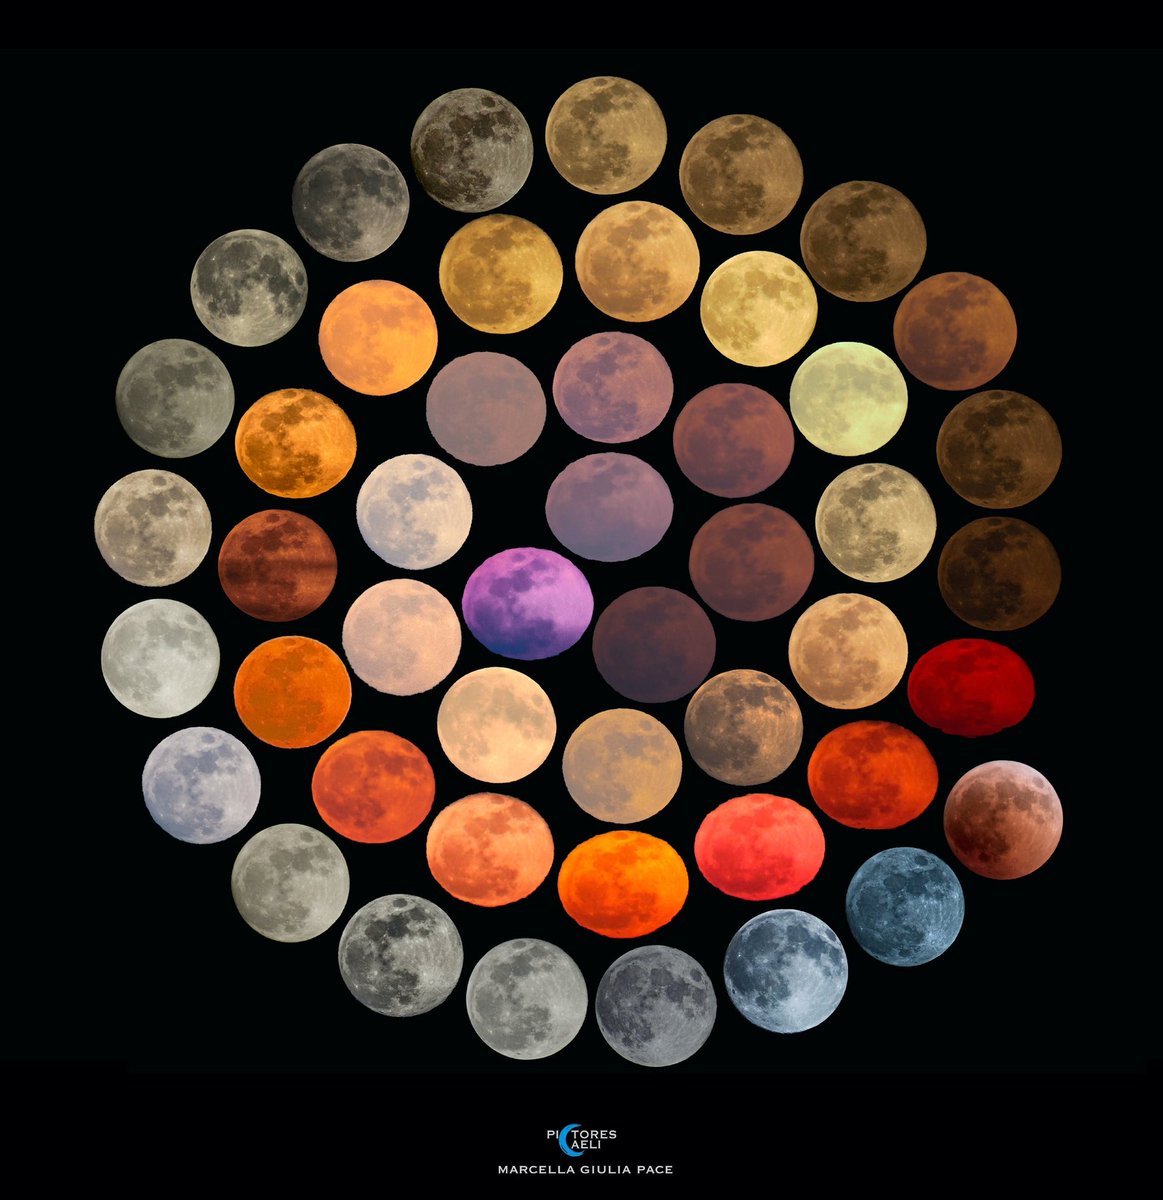 La luna en 48 colores diferentes en un lapso de 10 años.

📸 Marcella Giulia Pace